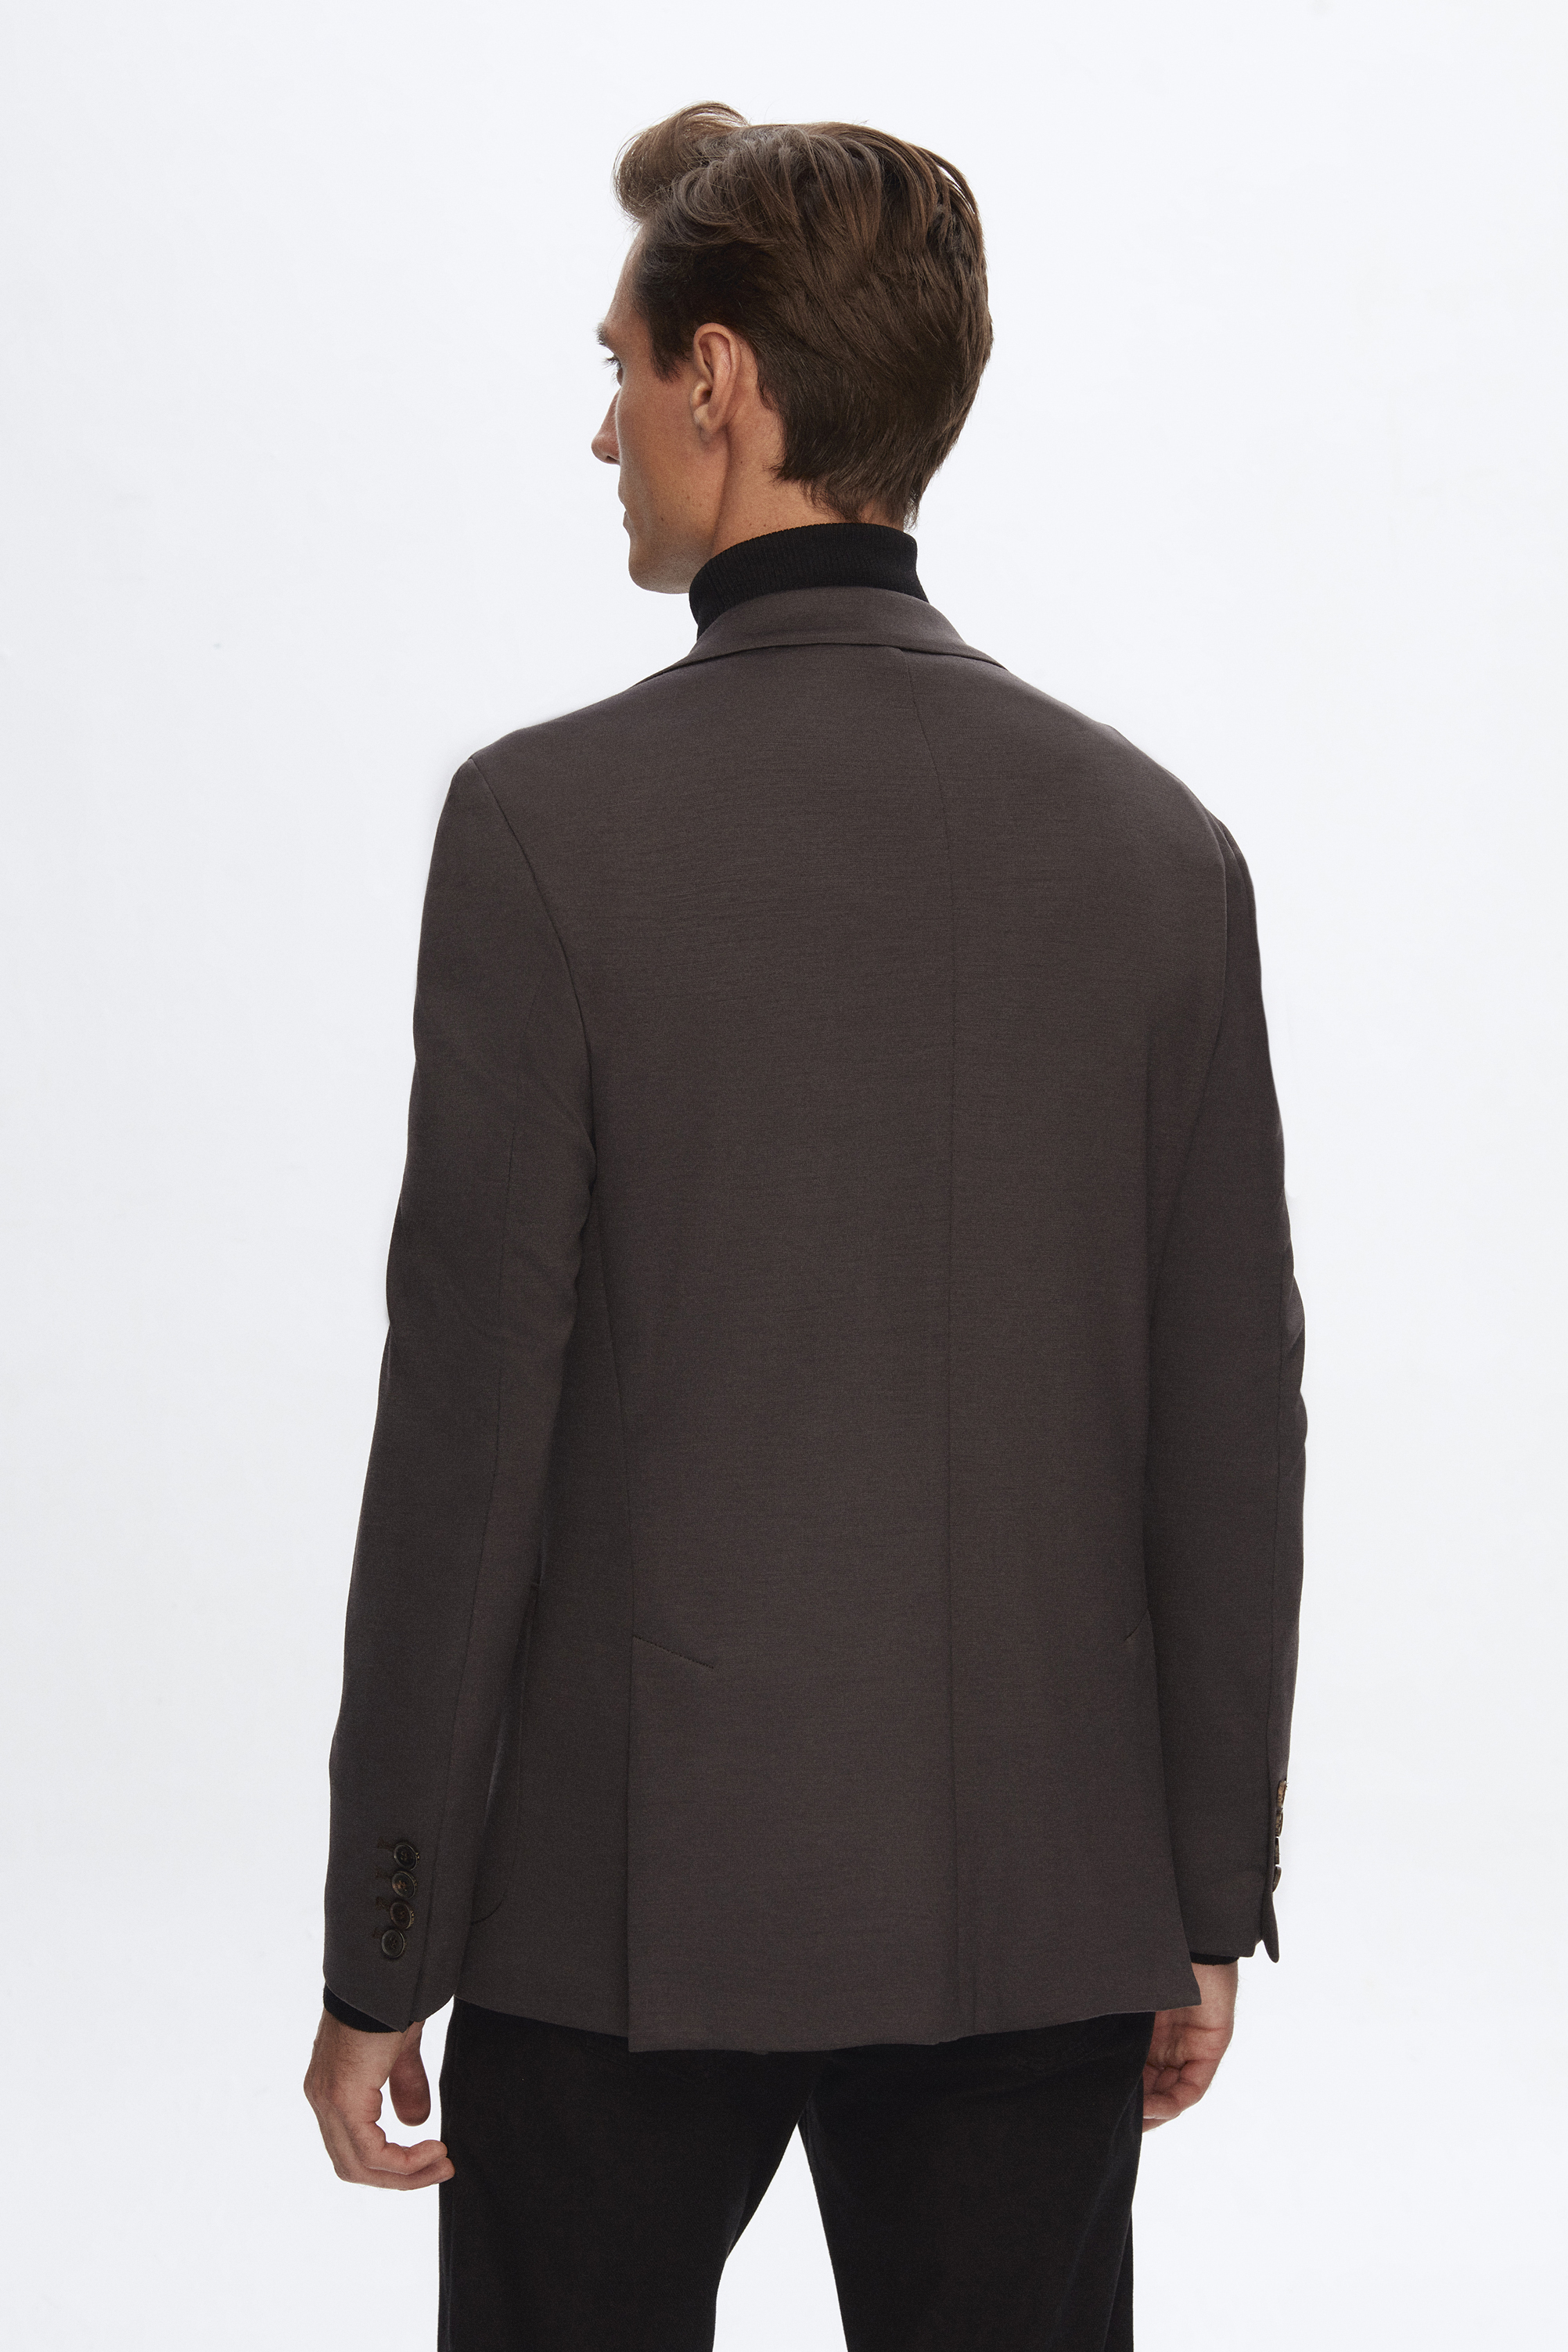 Damat Tween Damat Slim Fit Kahverengi Melanj %100 Yün Kumaş Ceket. 5